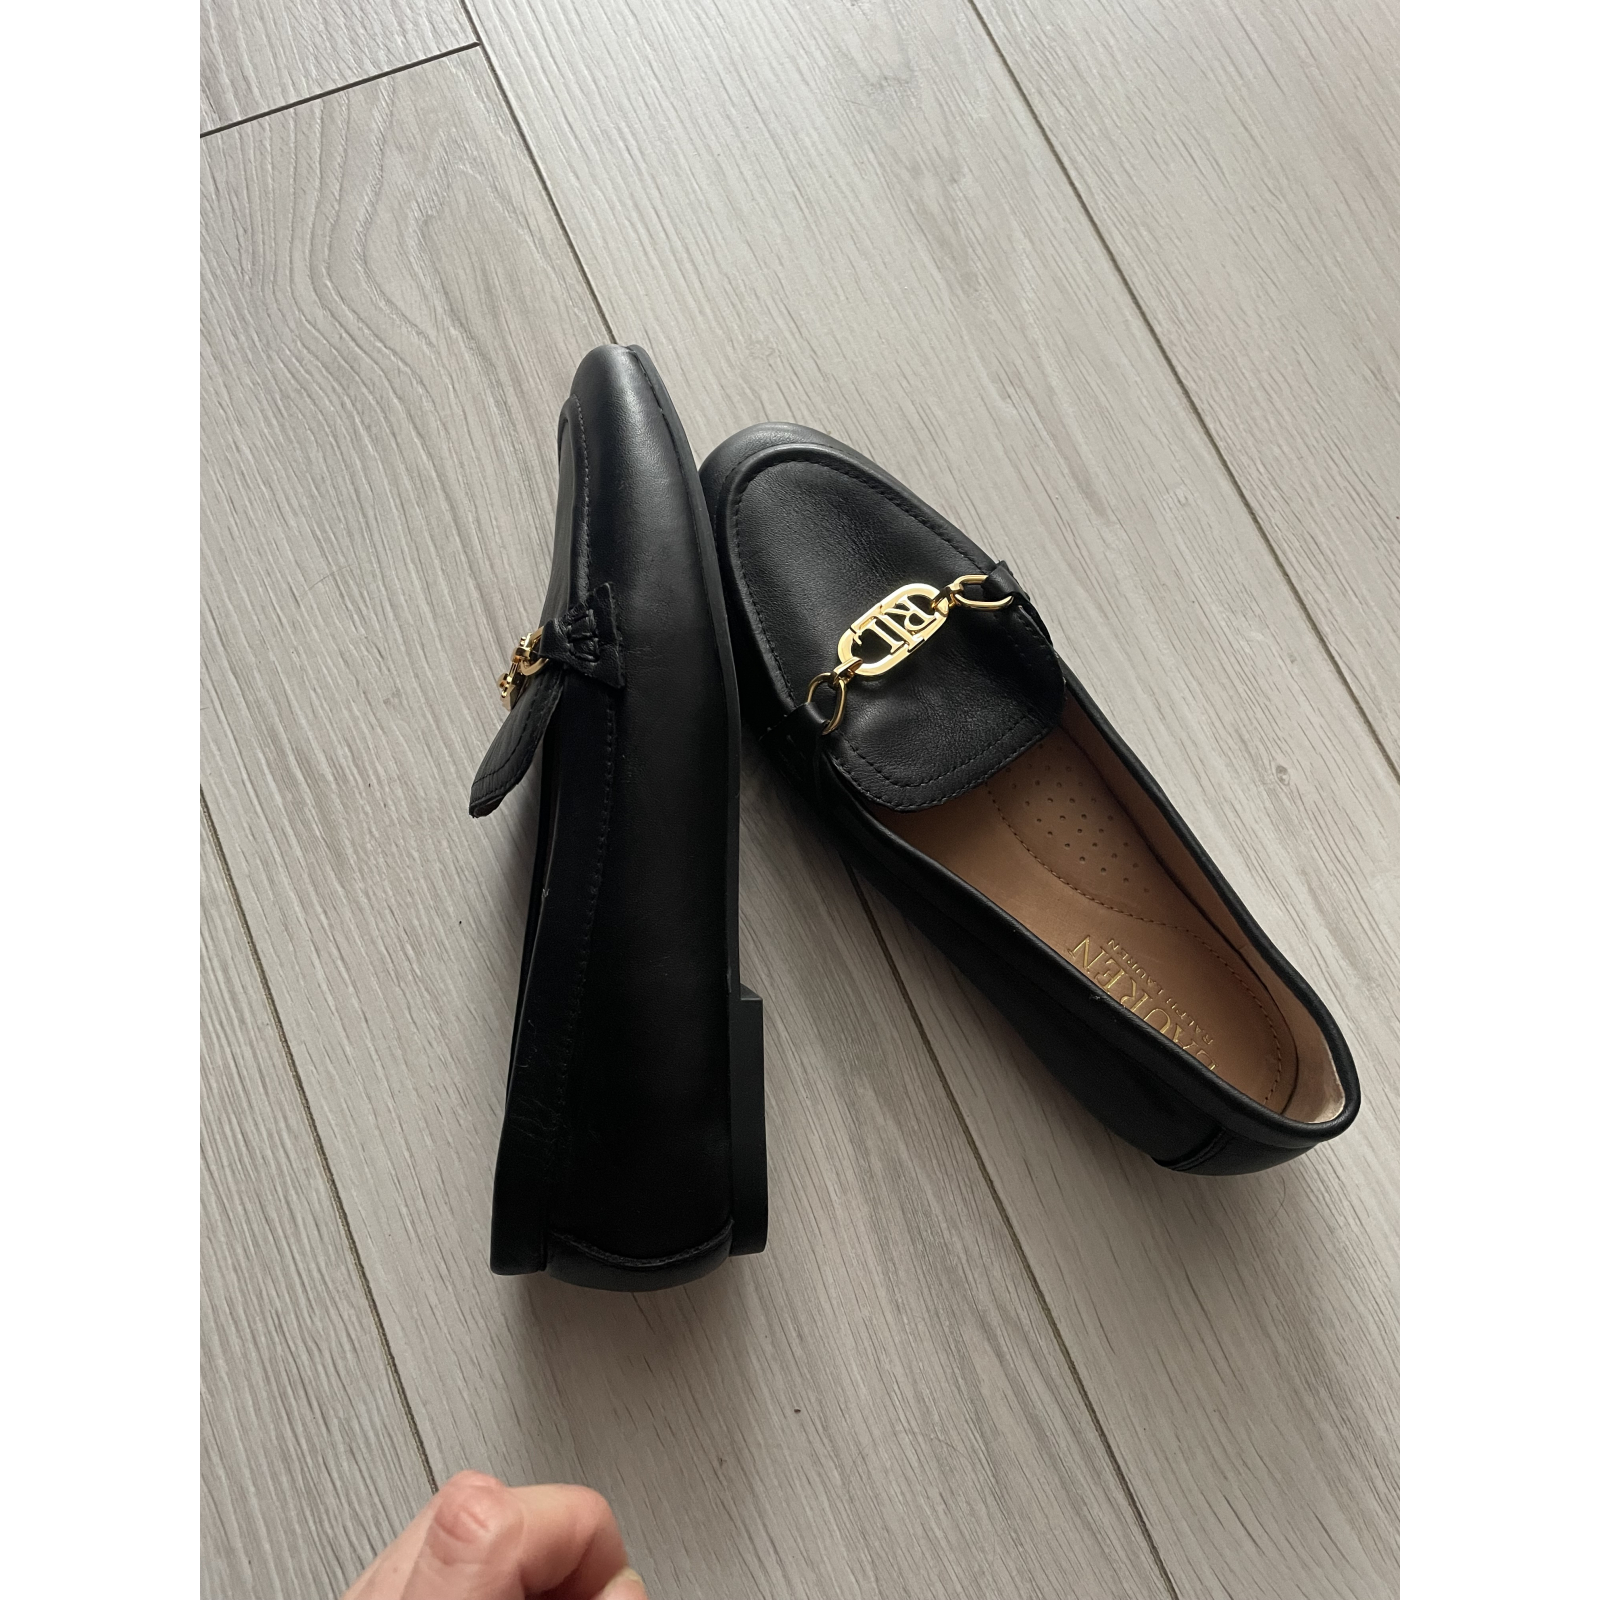 Nowe buty Loafersy Lauren Ralph Lauren - 36